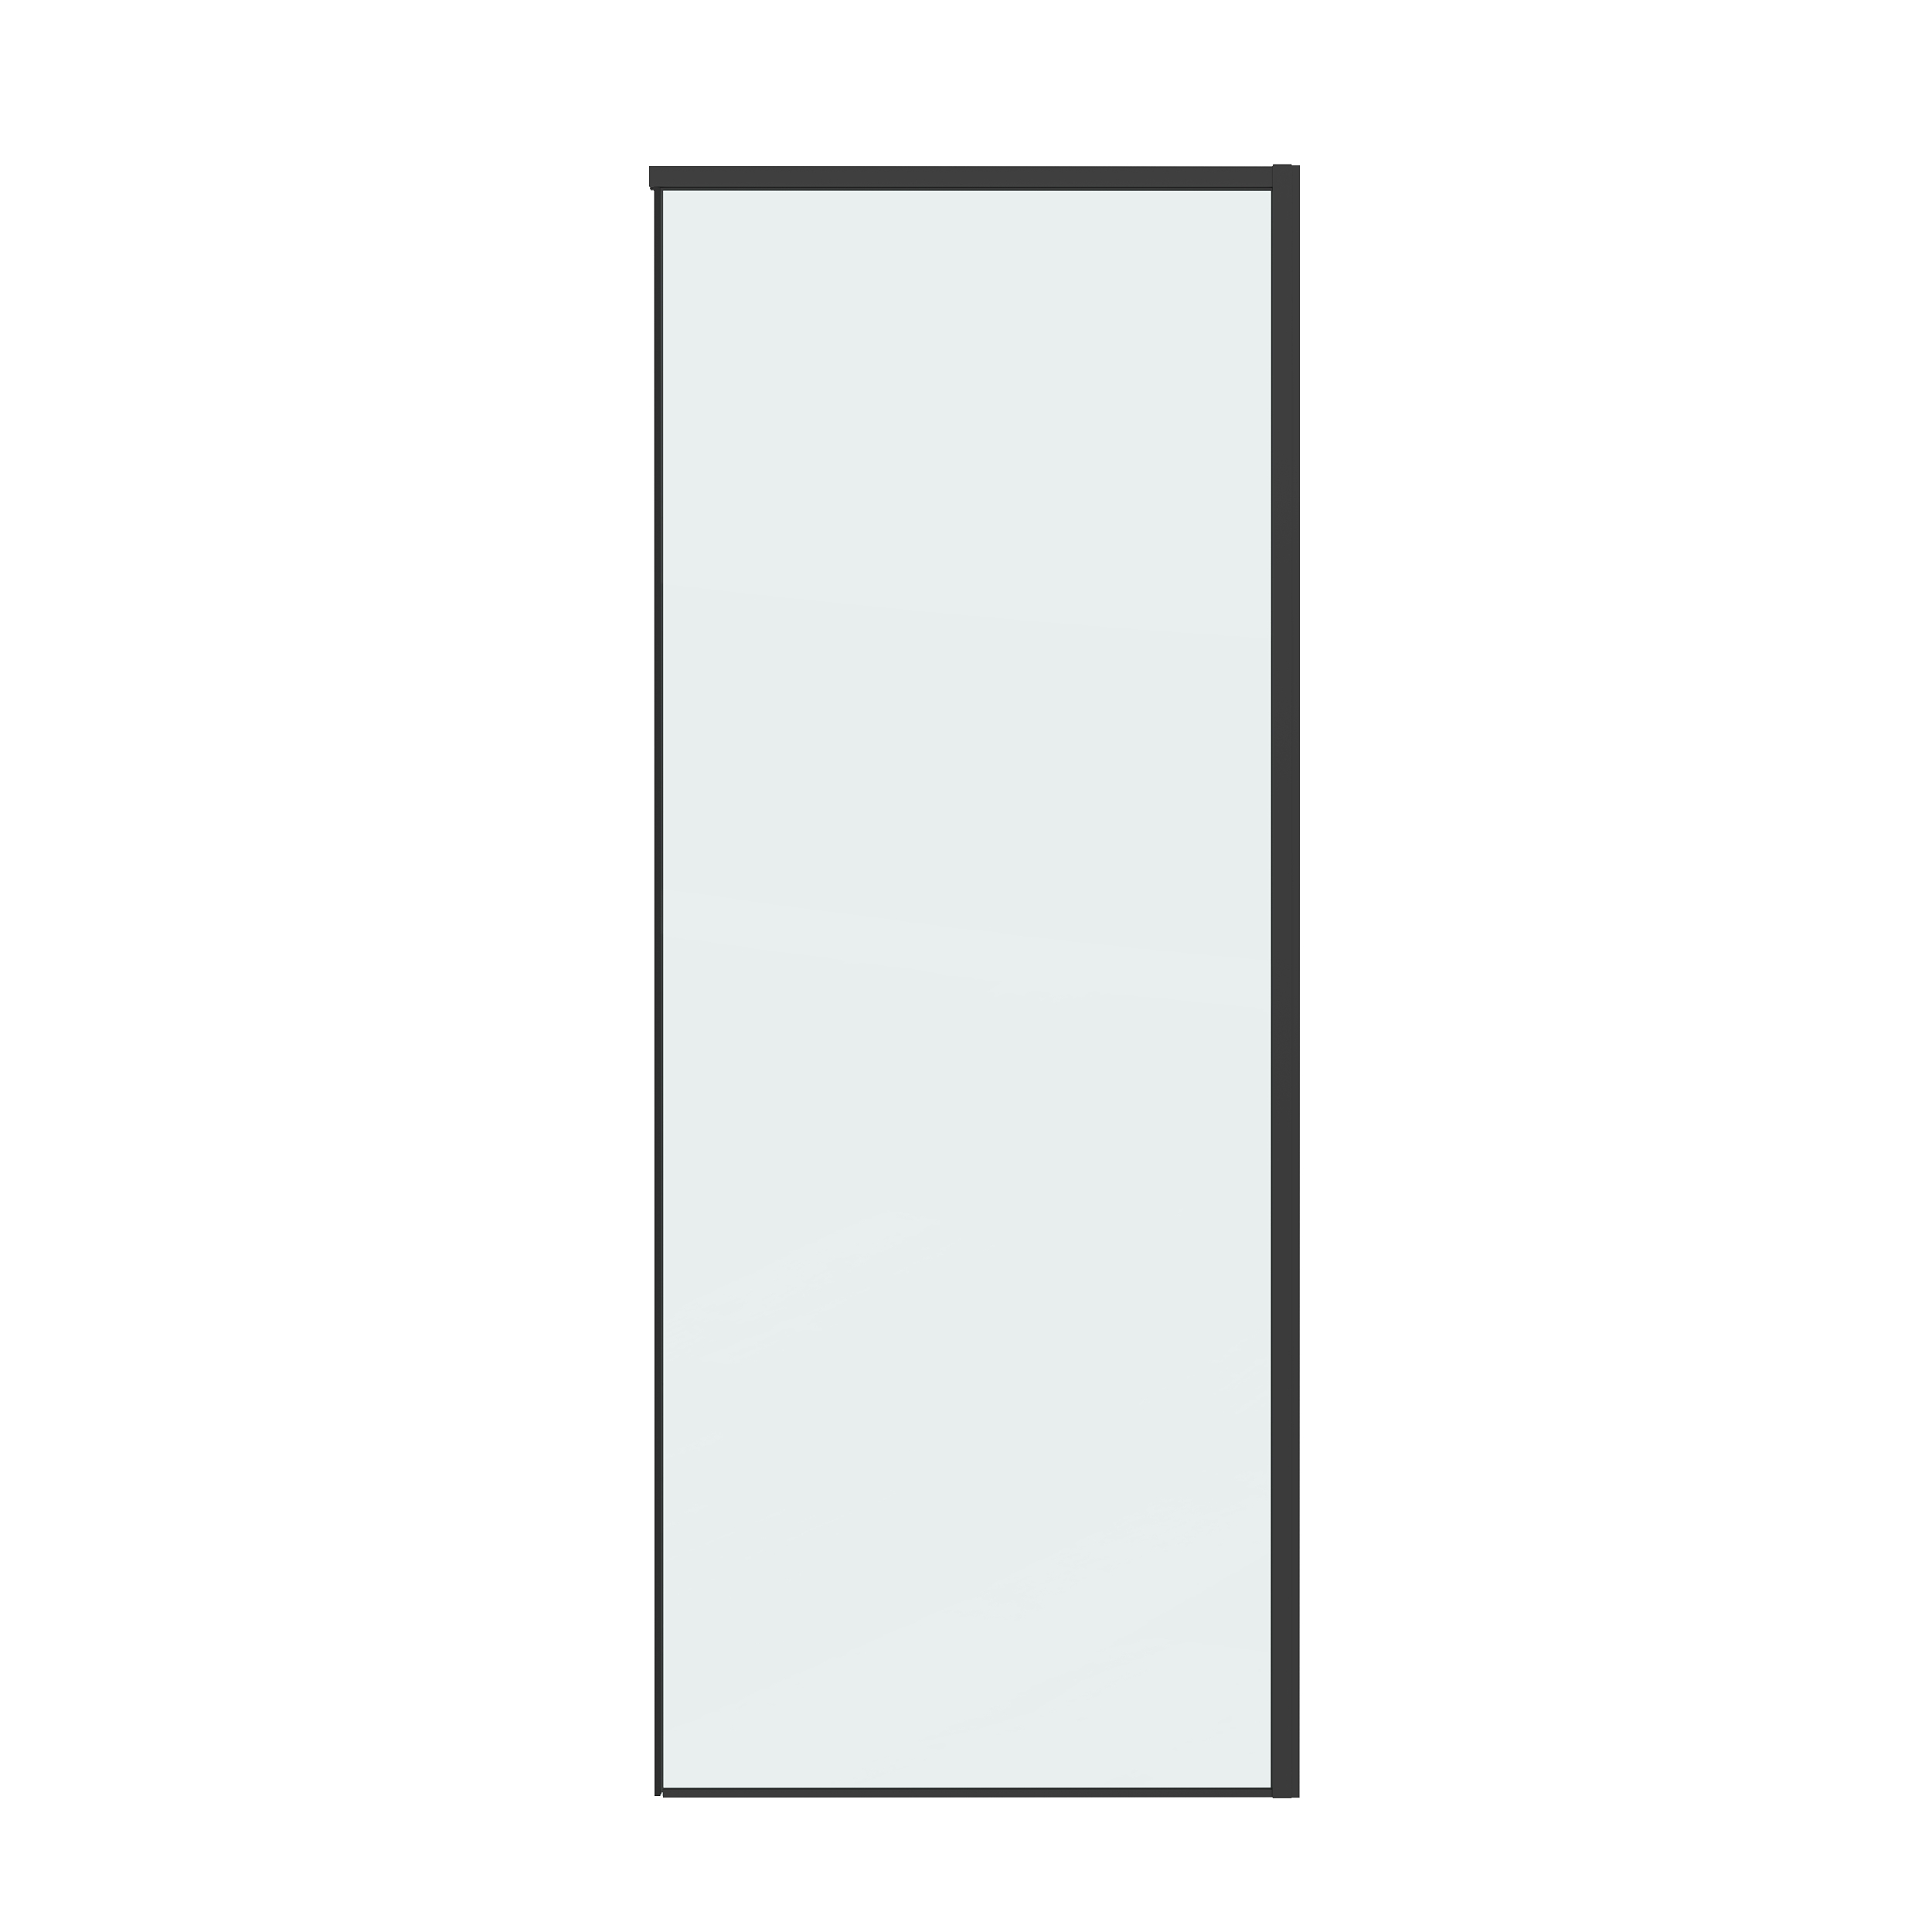 Боковая стенка Grossman Galaxy 80x195 200.K33.01.80.21.00 стекло прозрачное, профиль черный матовый